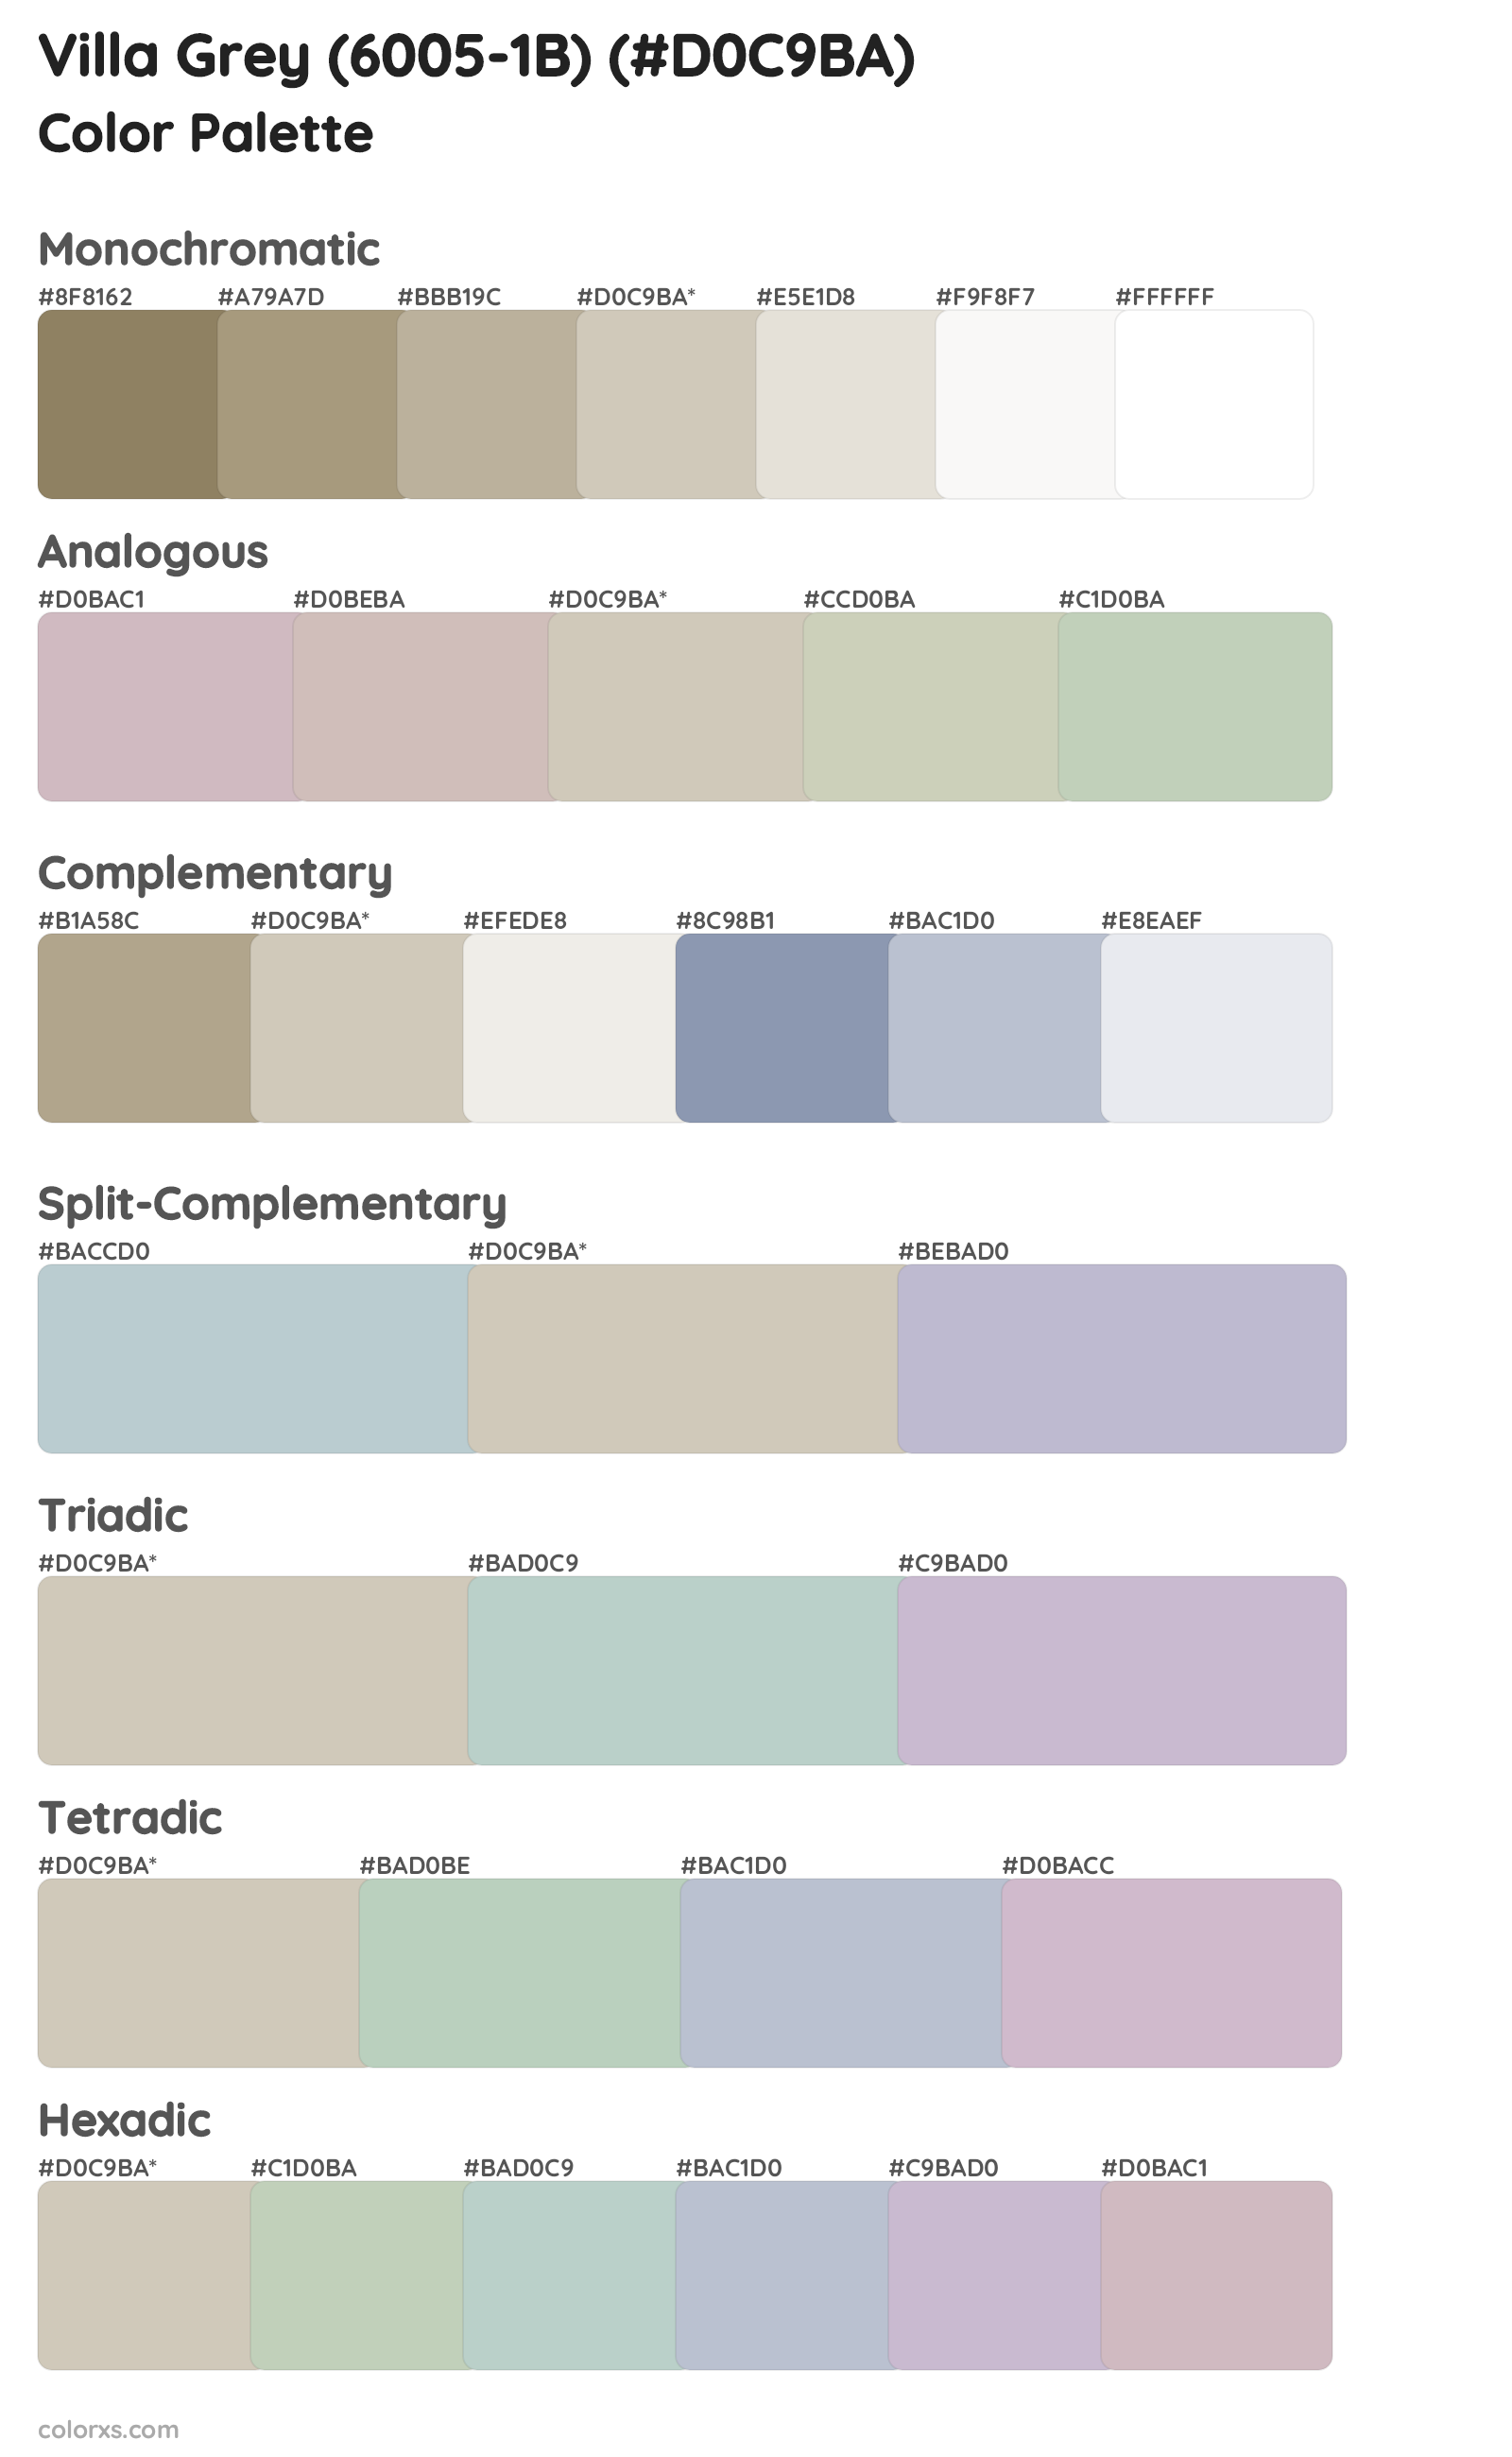 Villa Grey (6005-1B) Color Scheme Palettes